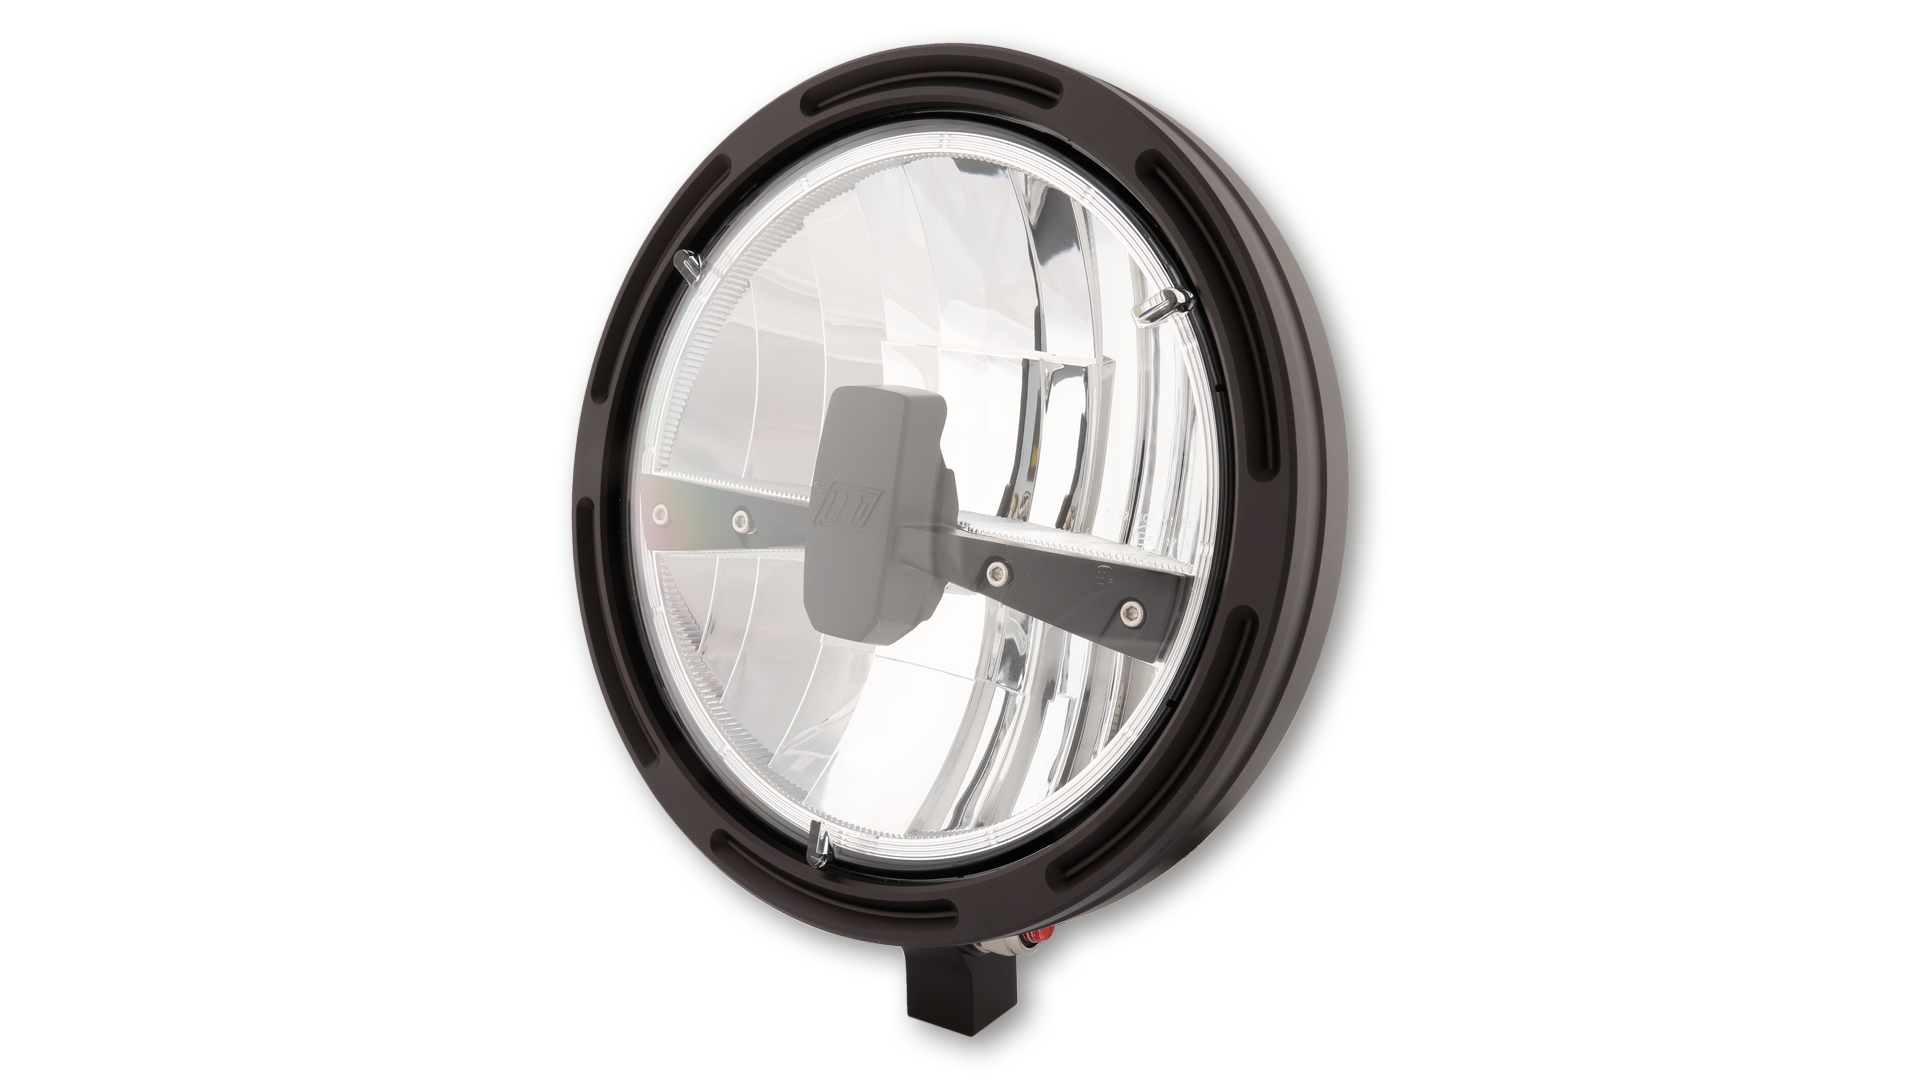 7 Zoll LED Hauptscheinwerfer TYP 3 mit Standlicht Funktion, rund mit verchromtem Reflektor, schwarzer Blende und klarem Glas,  E-geprüft. Erhältlich mit seitlicher und unterer Befestigung.